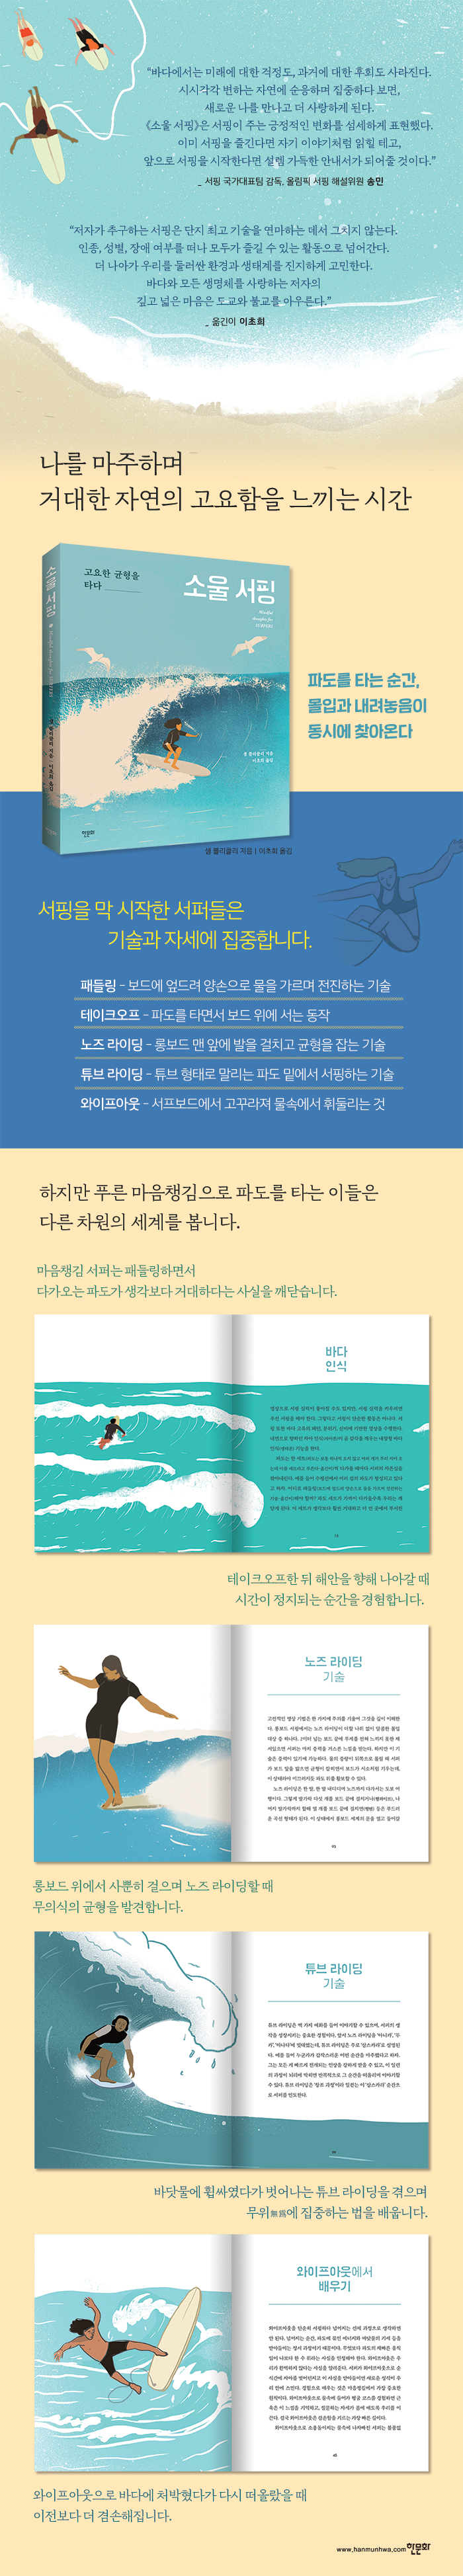 [상세페이지] 소울 서핑_한문화